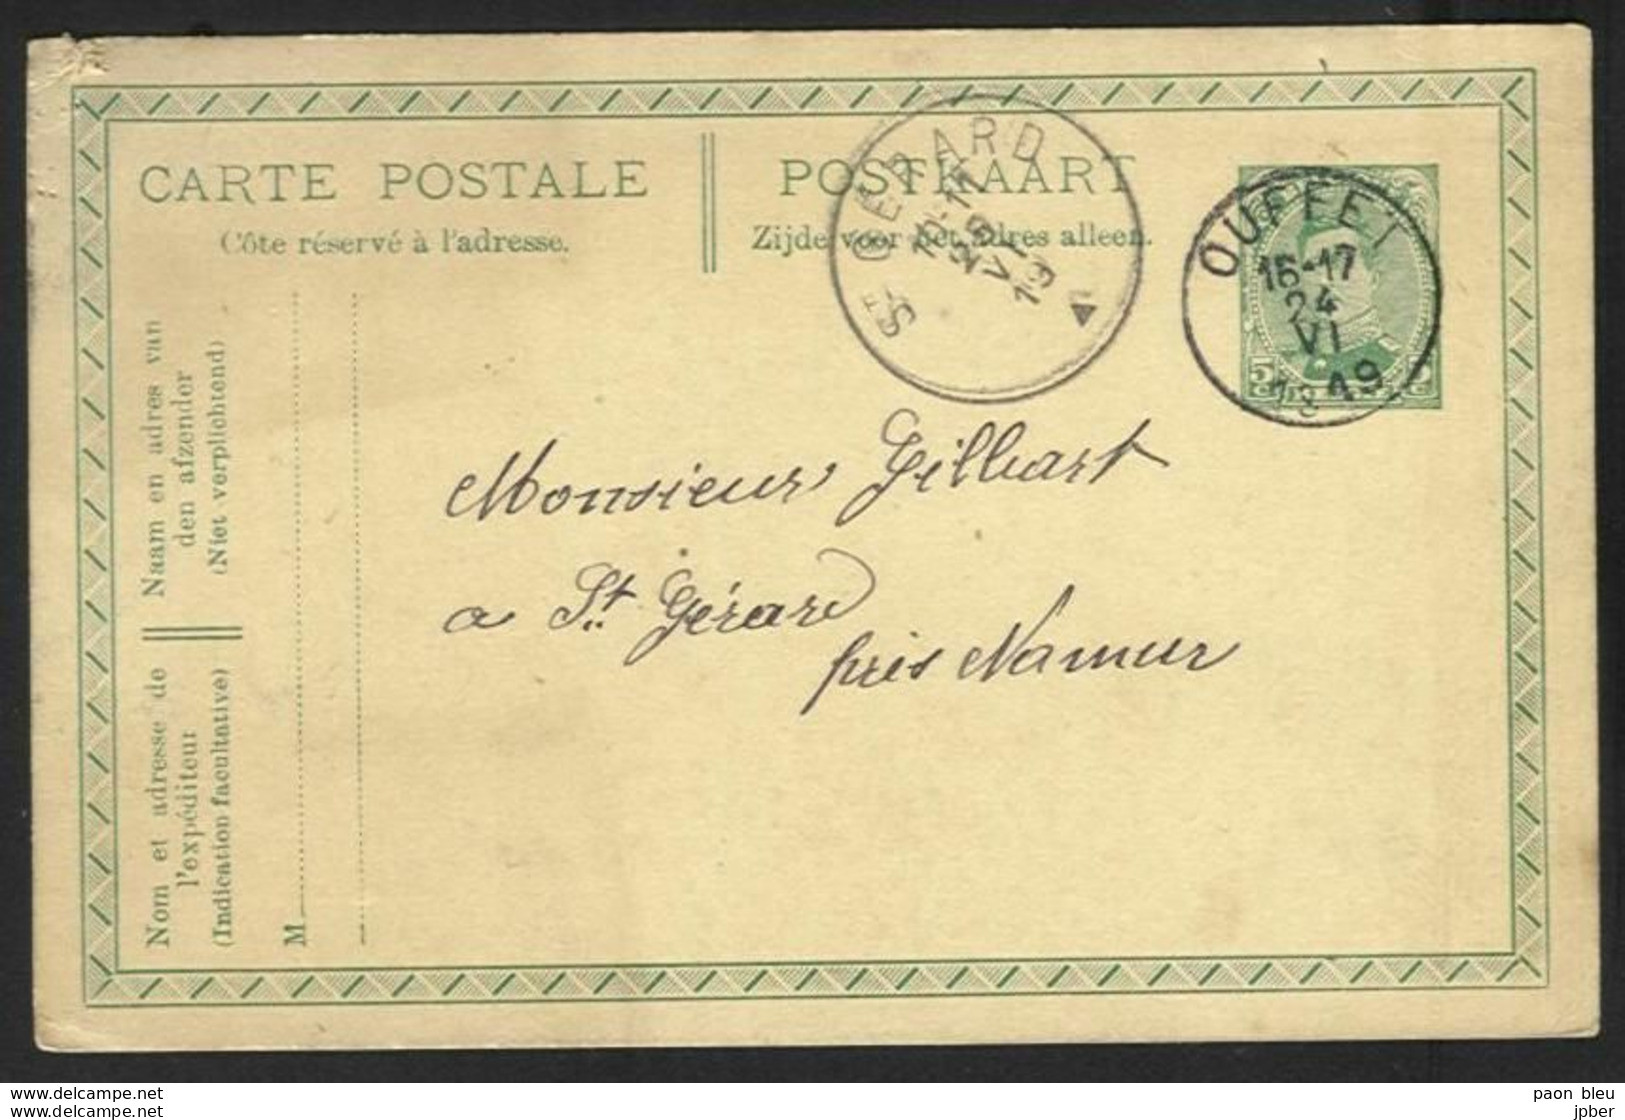 Belgique - Obl.fortune 1919 - Obl. OUFFET Siècle Gratté + Cachet St Gérard - Fortuna (1919)